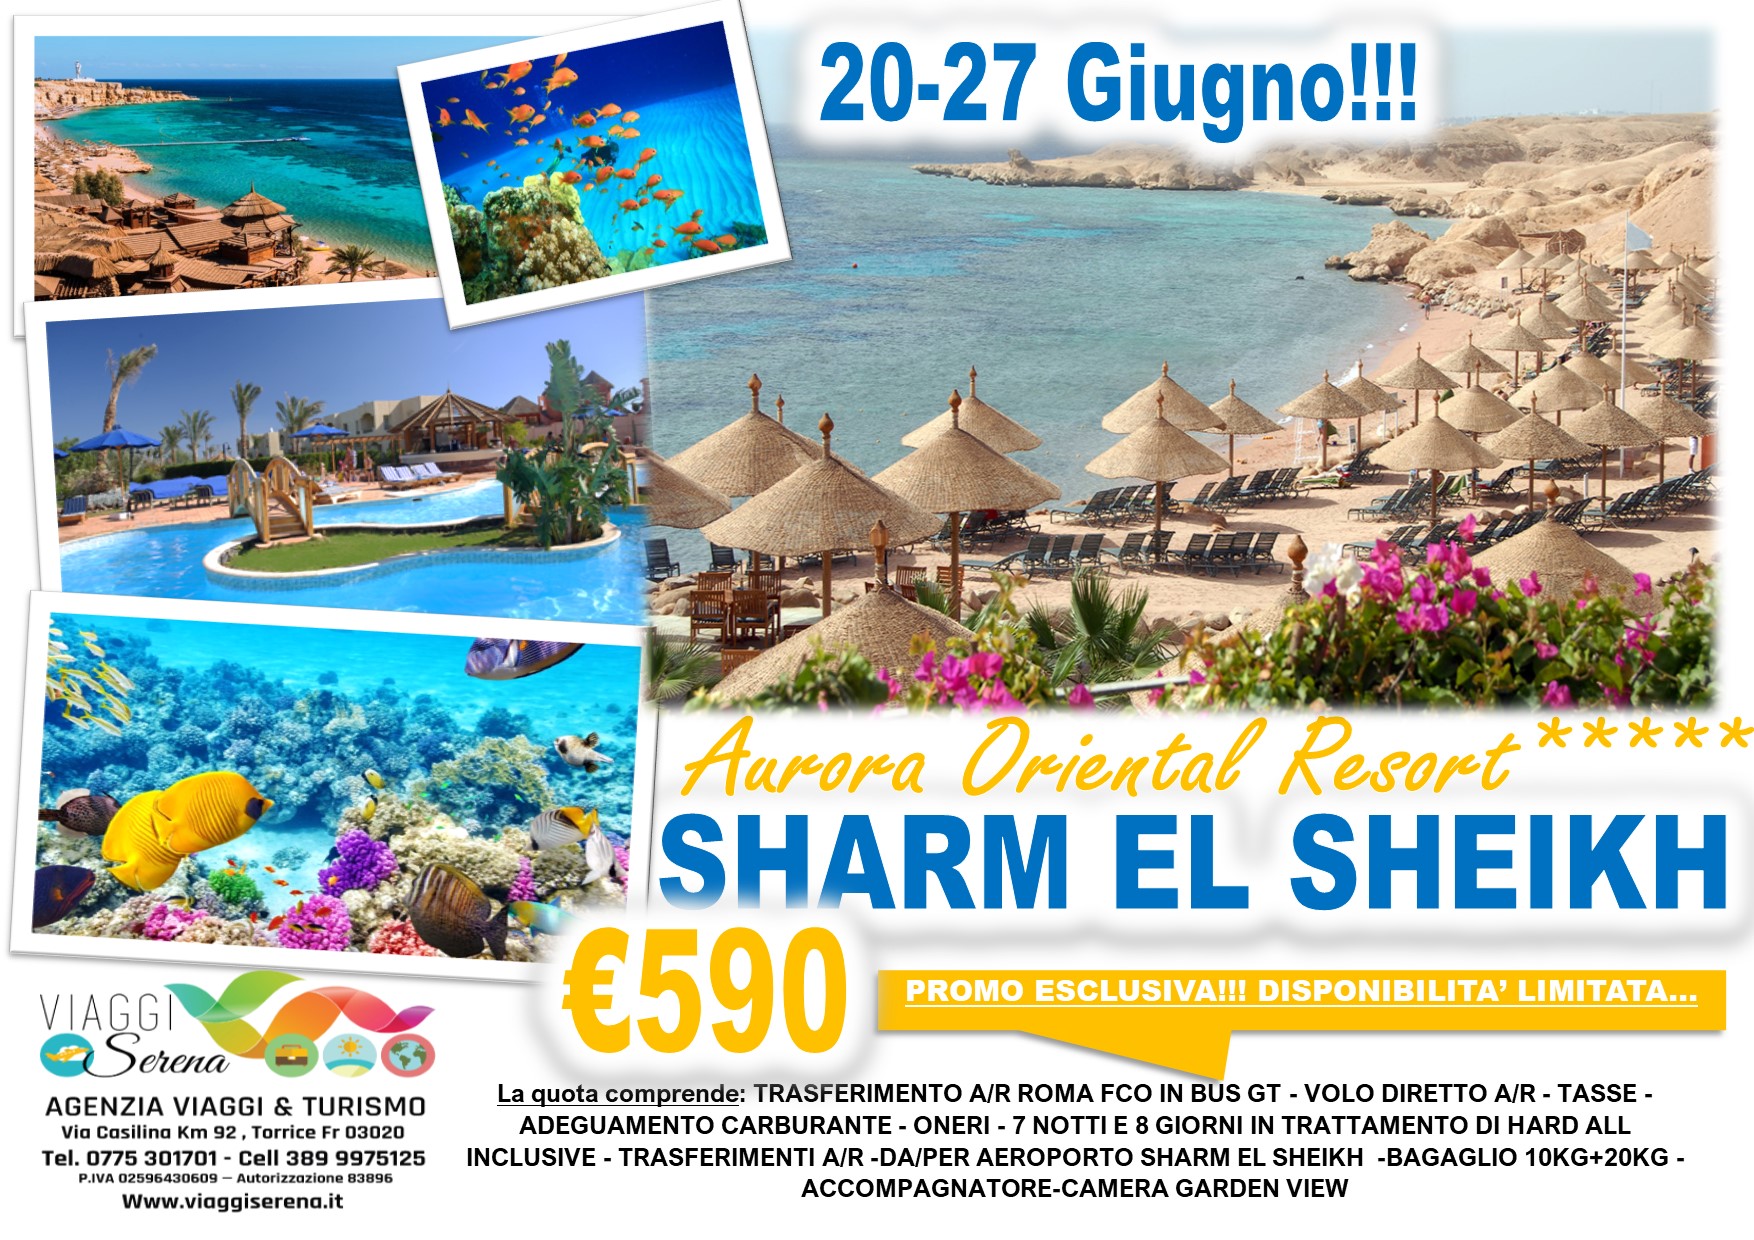 Viaggi di Gruppo: Sharm el Sheikh 20-27 Giugno “disponibilita’ limitata” € 590,00